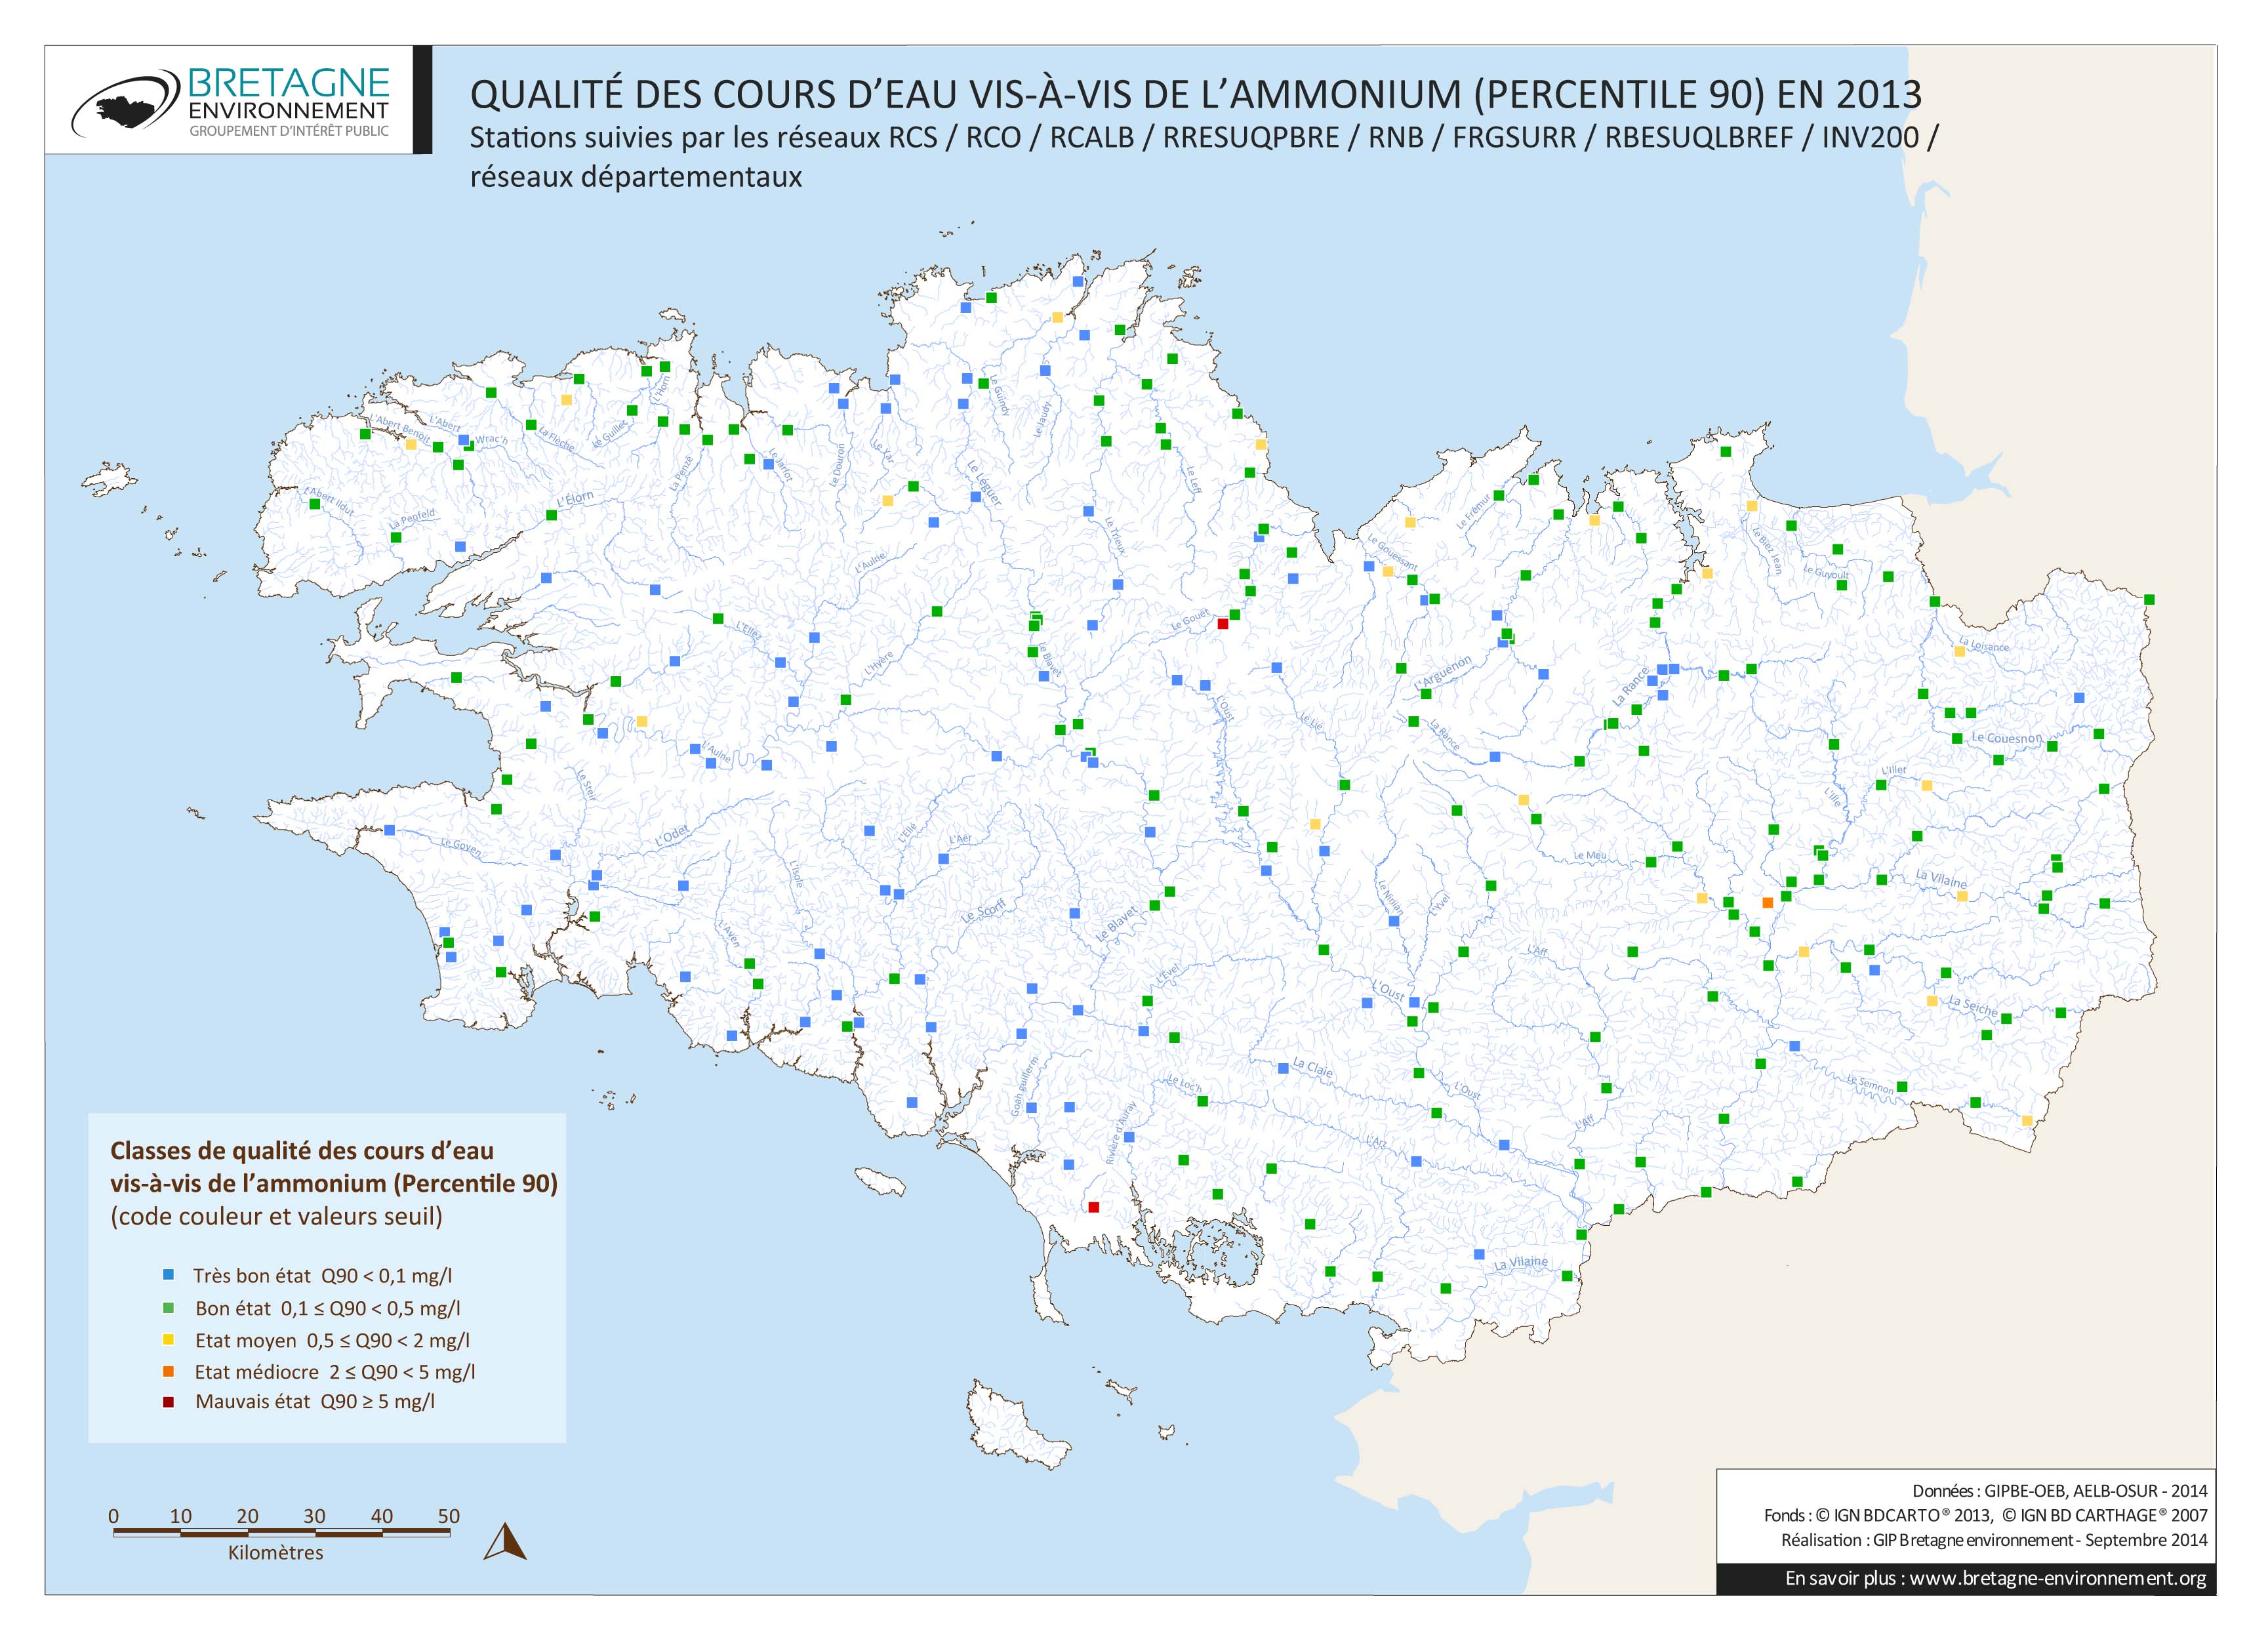 Qualité des cours d'eau bretons vis-à-vis de l'ammonium (Q90) en 2013